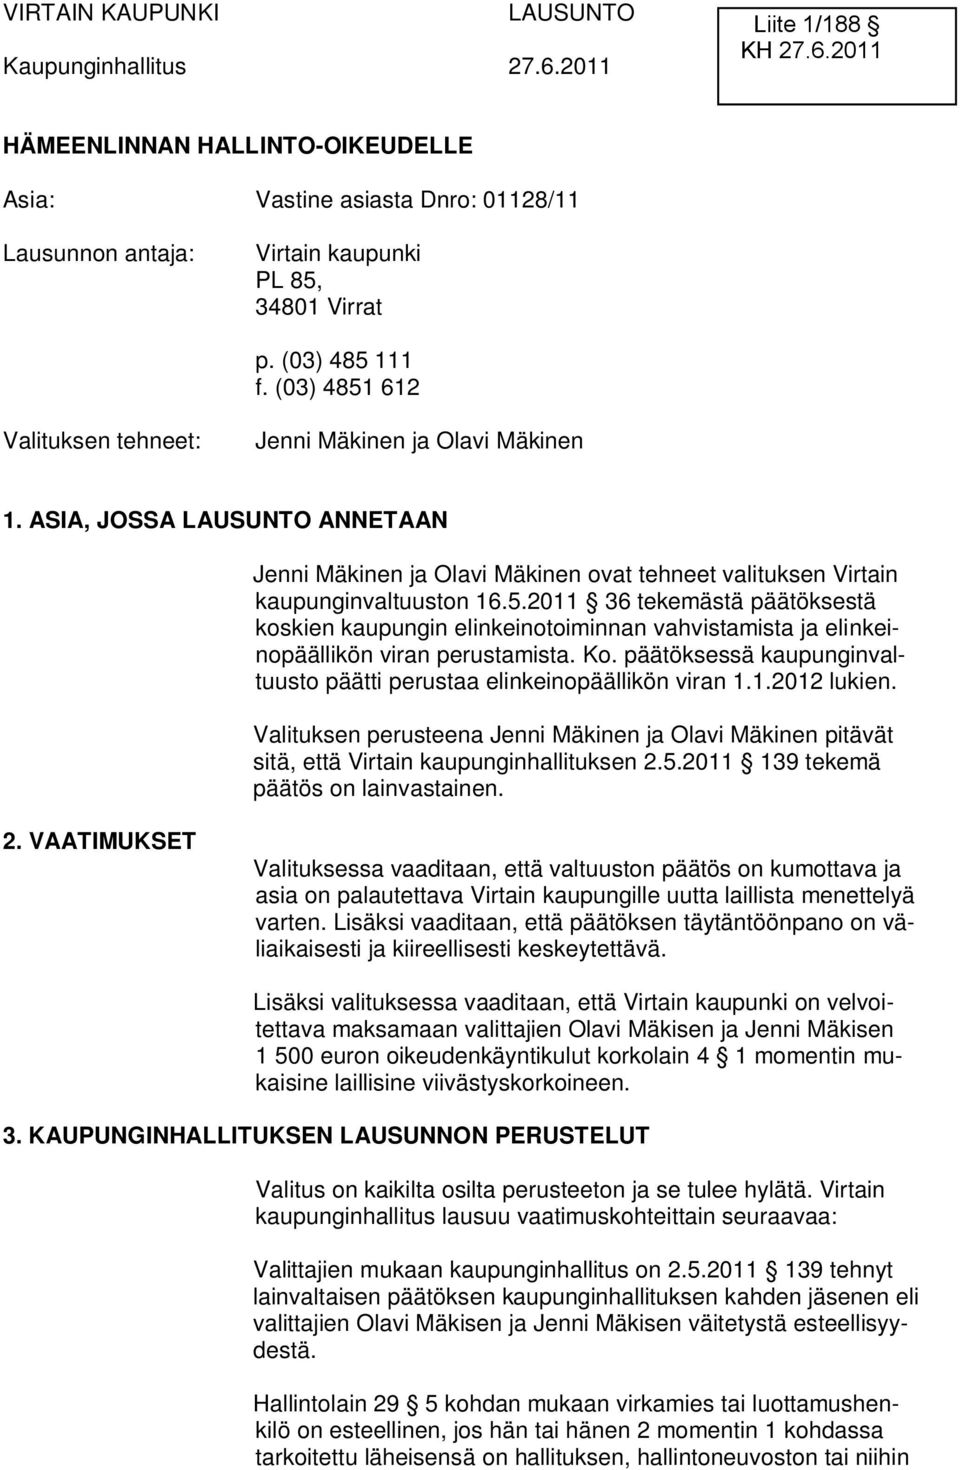 Ko. päätöksessä kaupunginvaltuusto päätti perustaa elinkeinopäällikön viran 1.1.2012 lukien. Valituksen perusteena Jenni Mäkinen ja Olavi Mäkinen pitävät sitä, että Virtain kaupunginhallituksen 2.5.